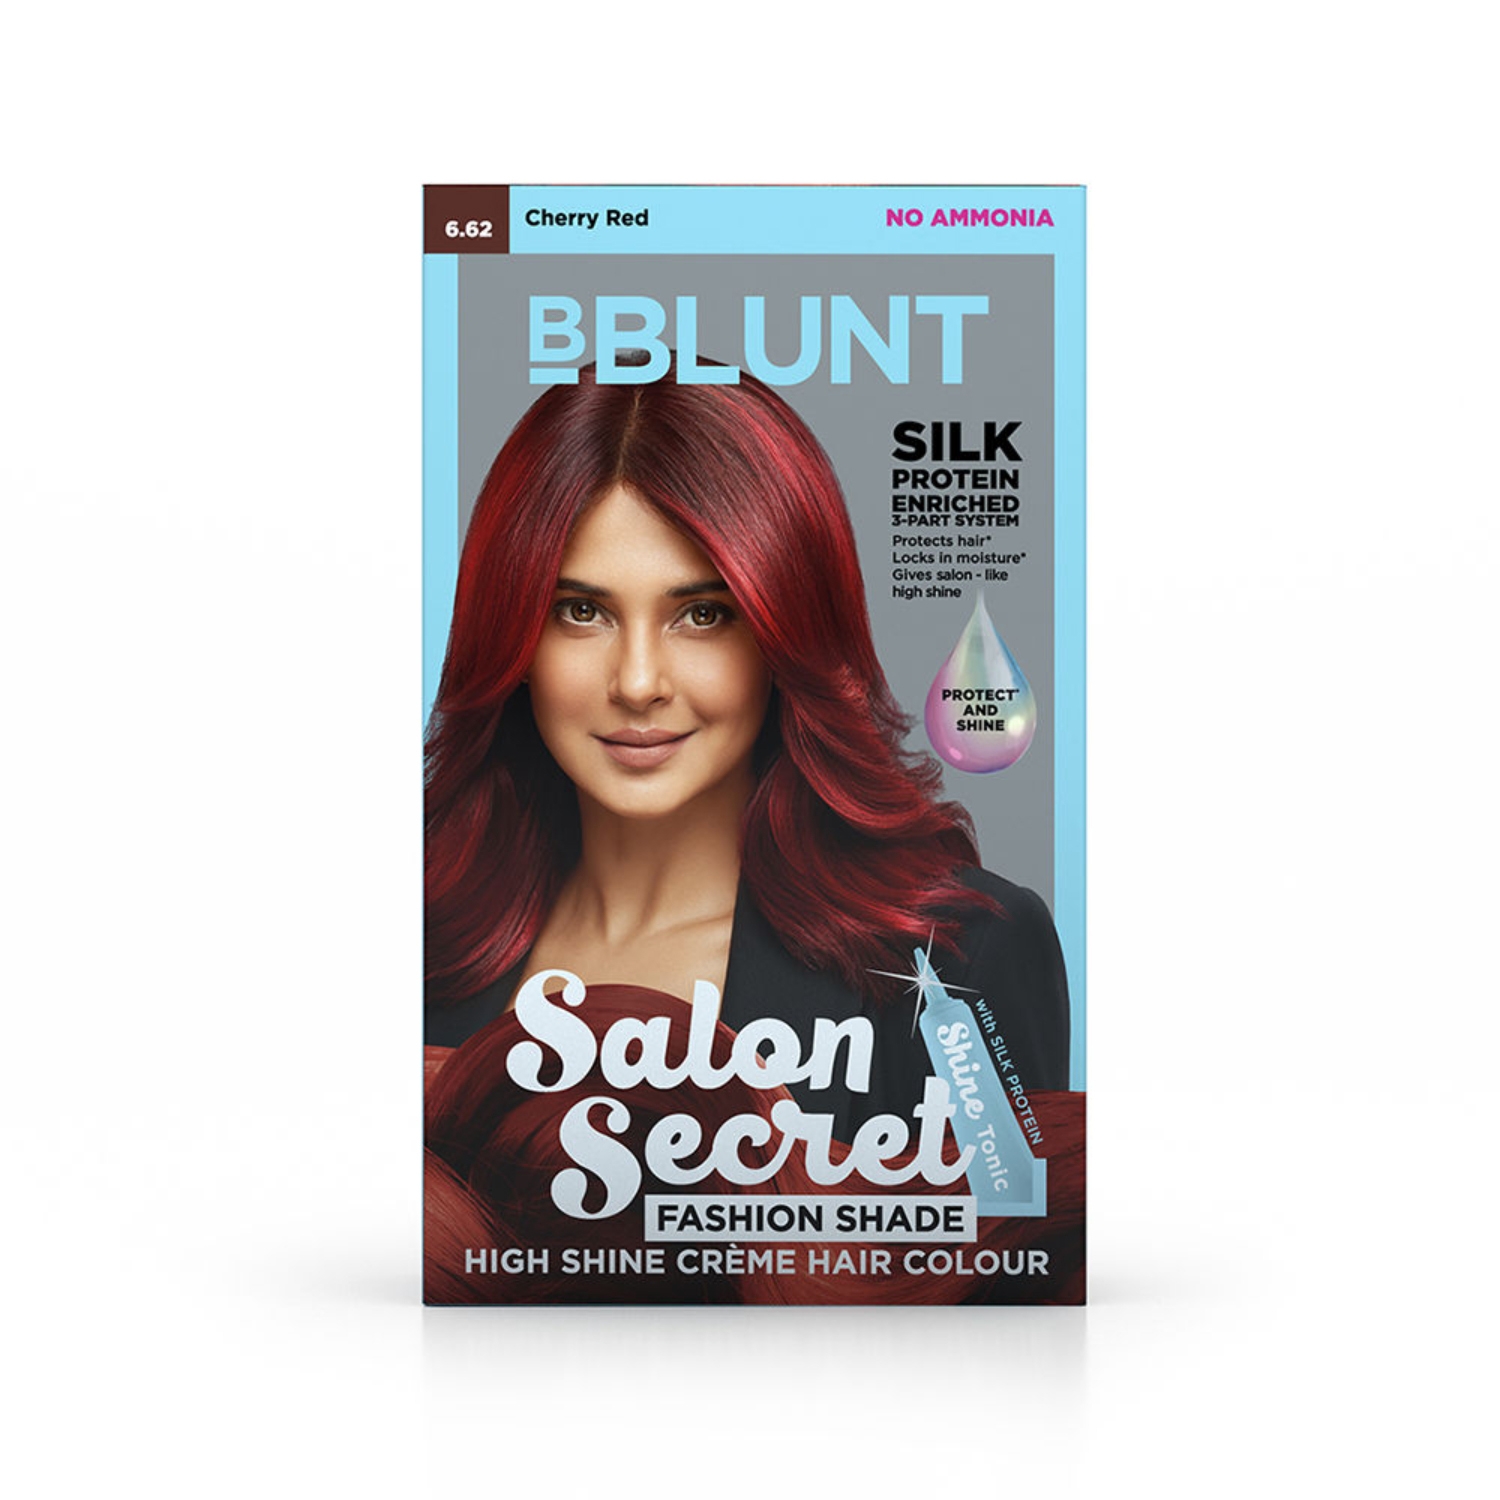 BBLUNT Salon Secret High Shine Crème Hair Colour - Coffee Natural Brown -  152 ml (Value Pack)